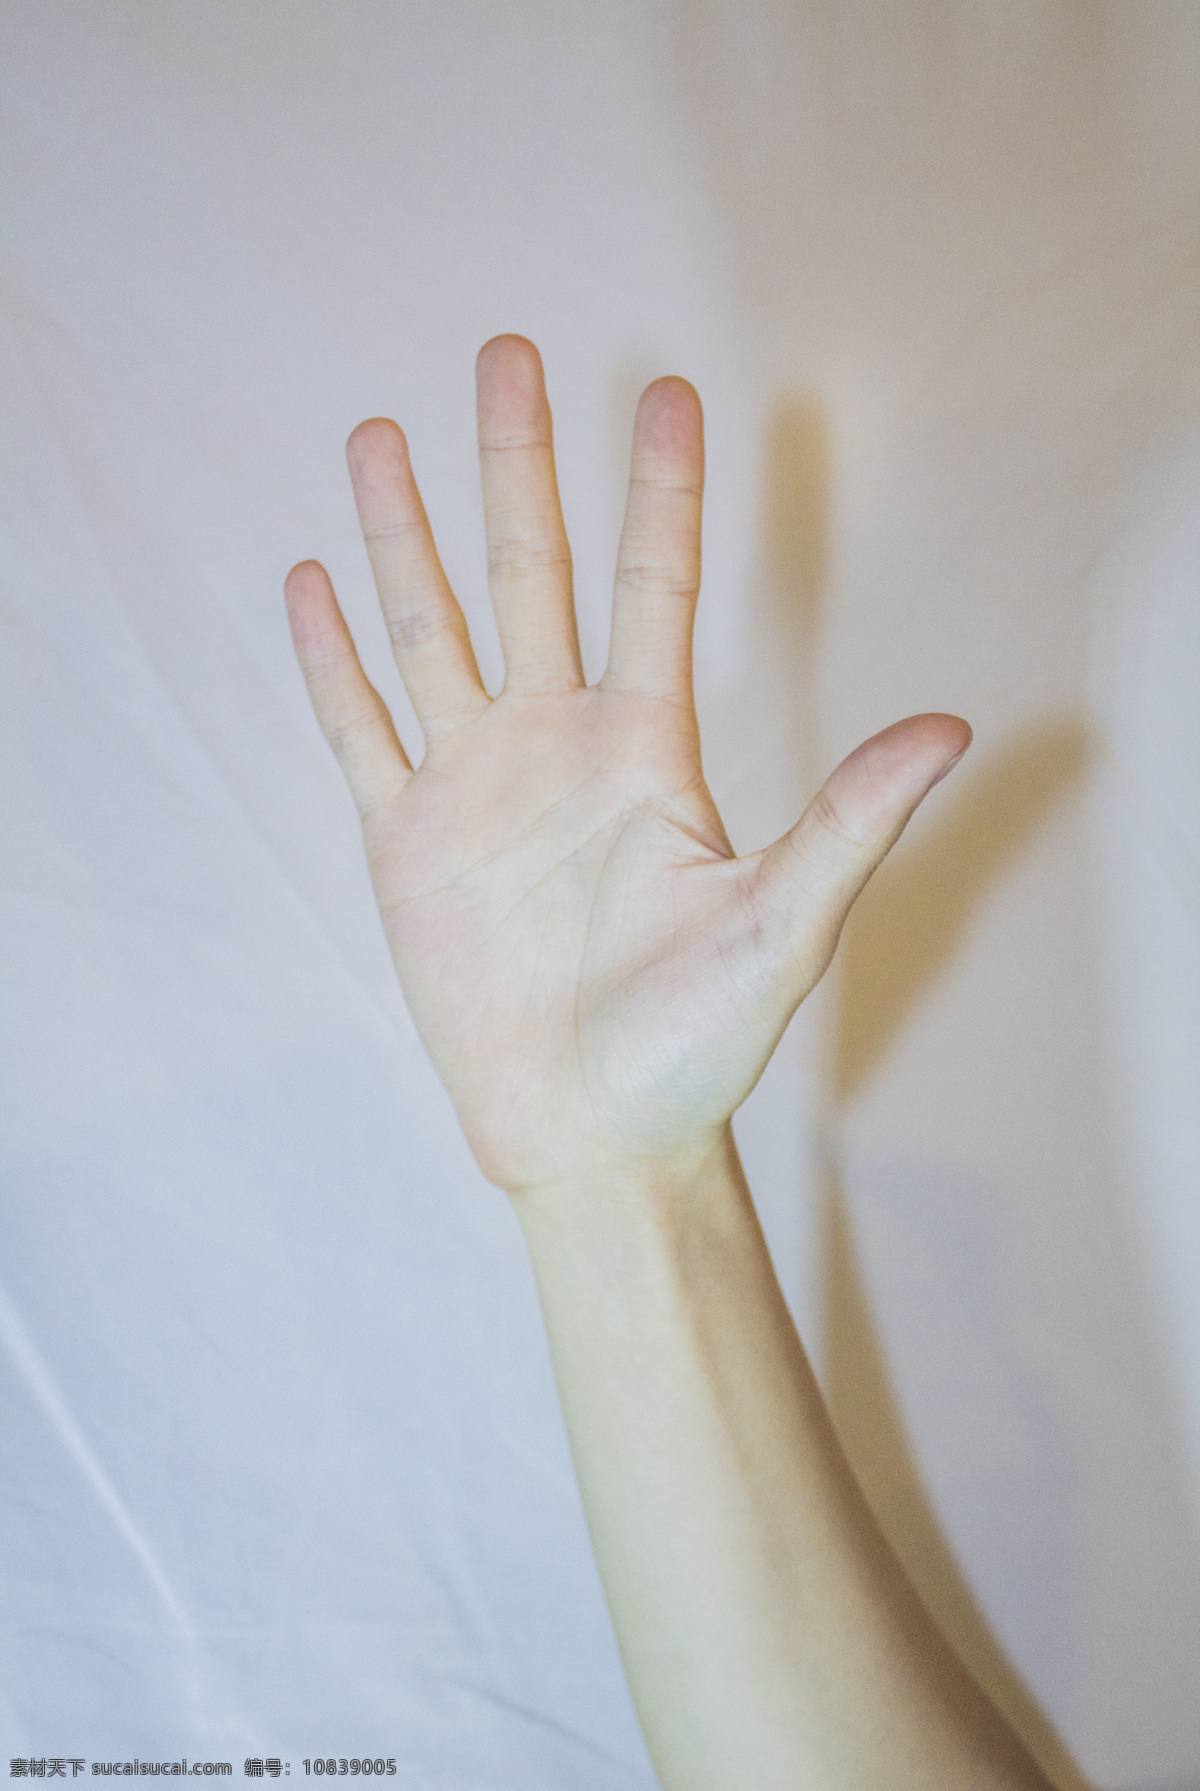 手掌 手势 背景 图 商用 五手势 手部 手势动作 照片